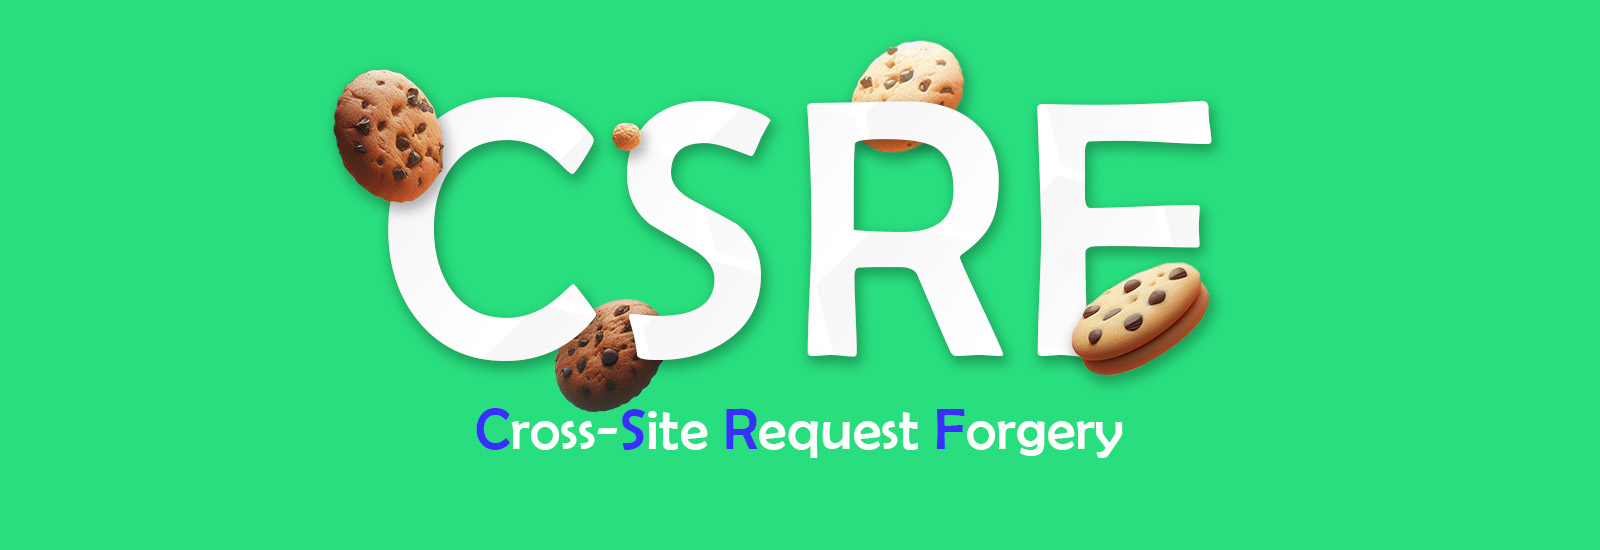 csrf-header